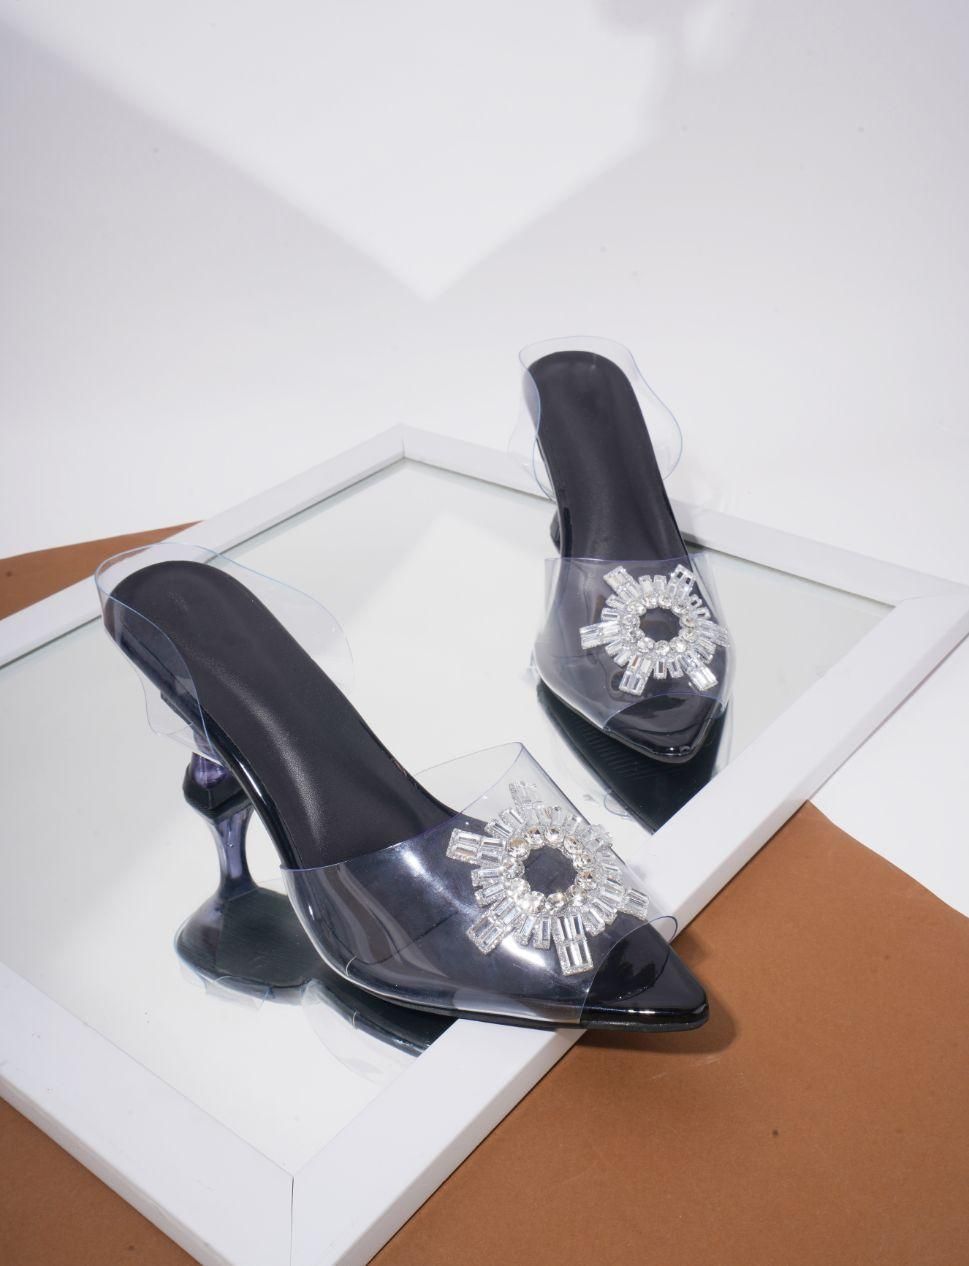 Transparent Sandal Spool/Stiletto Heel Pump Shoes For Women's